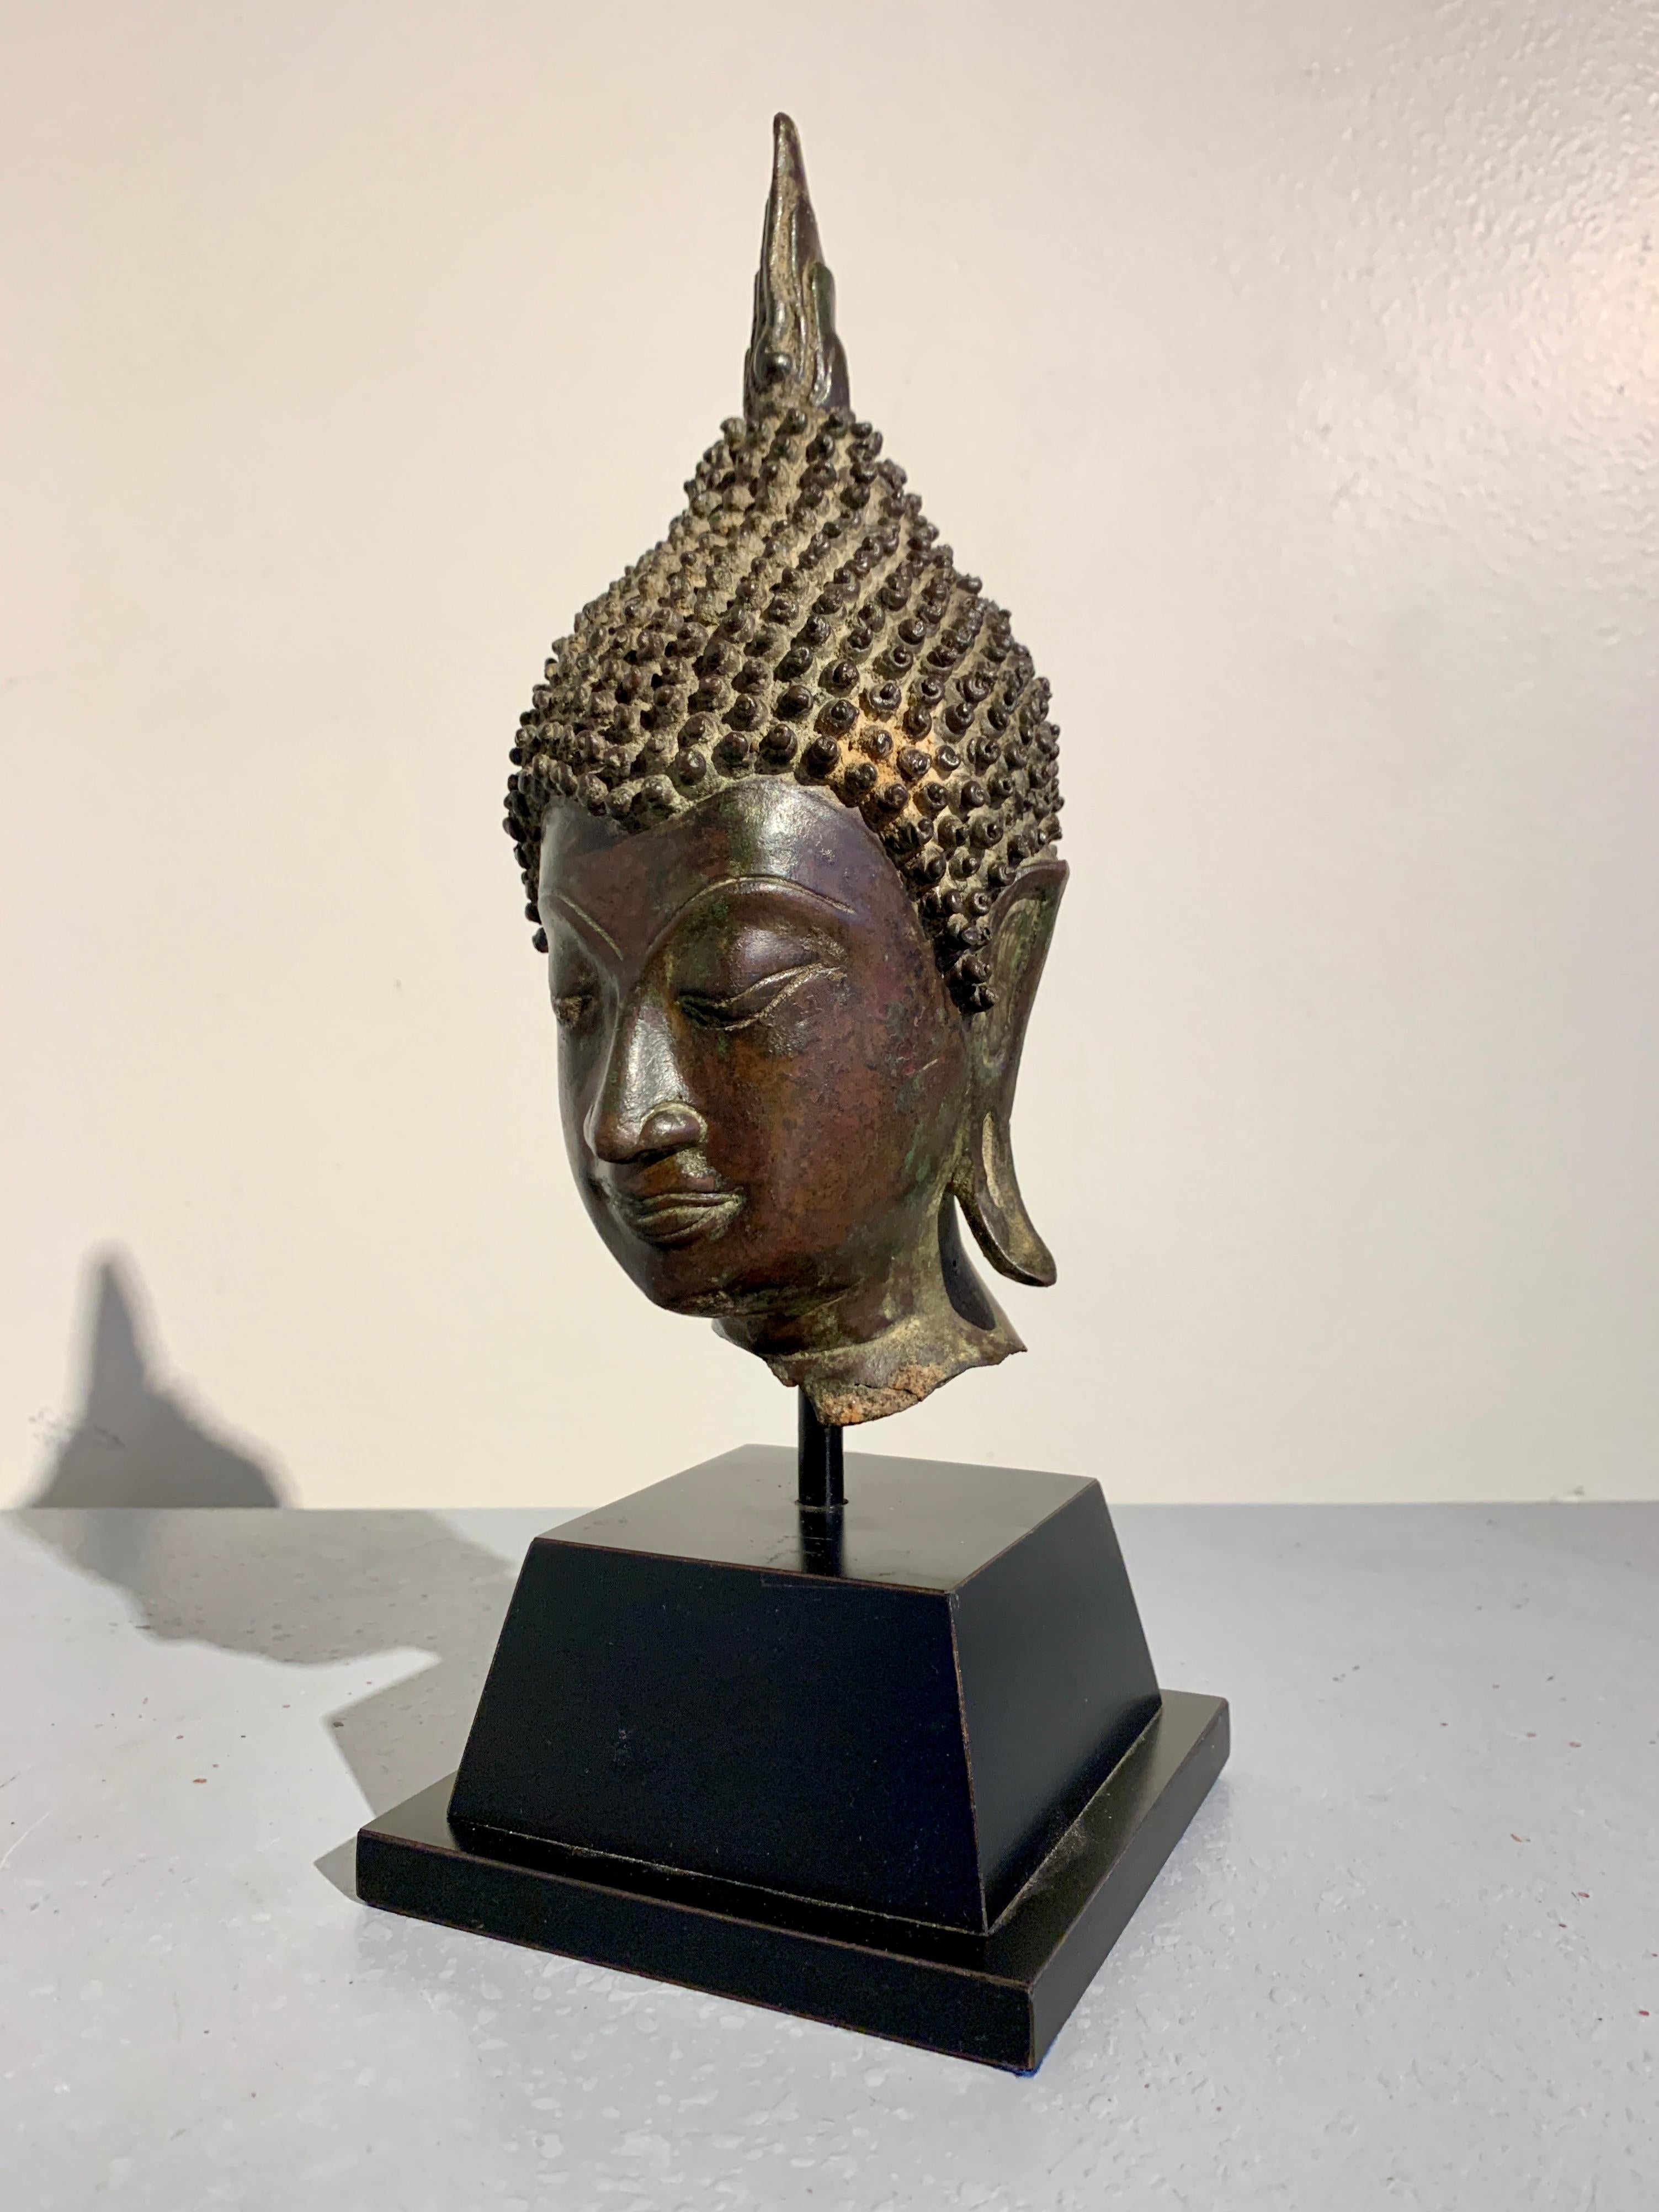 Ein exquisiter thailändischer Bronzeguss-Buddha-Kopf, Königreich Sukhothai, circa 15. Jahrhundert, Thailand.

Das ansprechende Gesicht des Buddha mit seiner schmalen, ovalen Form und den scharfen Zügen ist ein Beispiel für den Sukhothai-Stil. Der